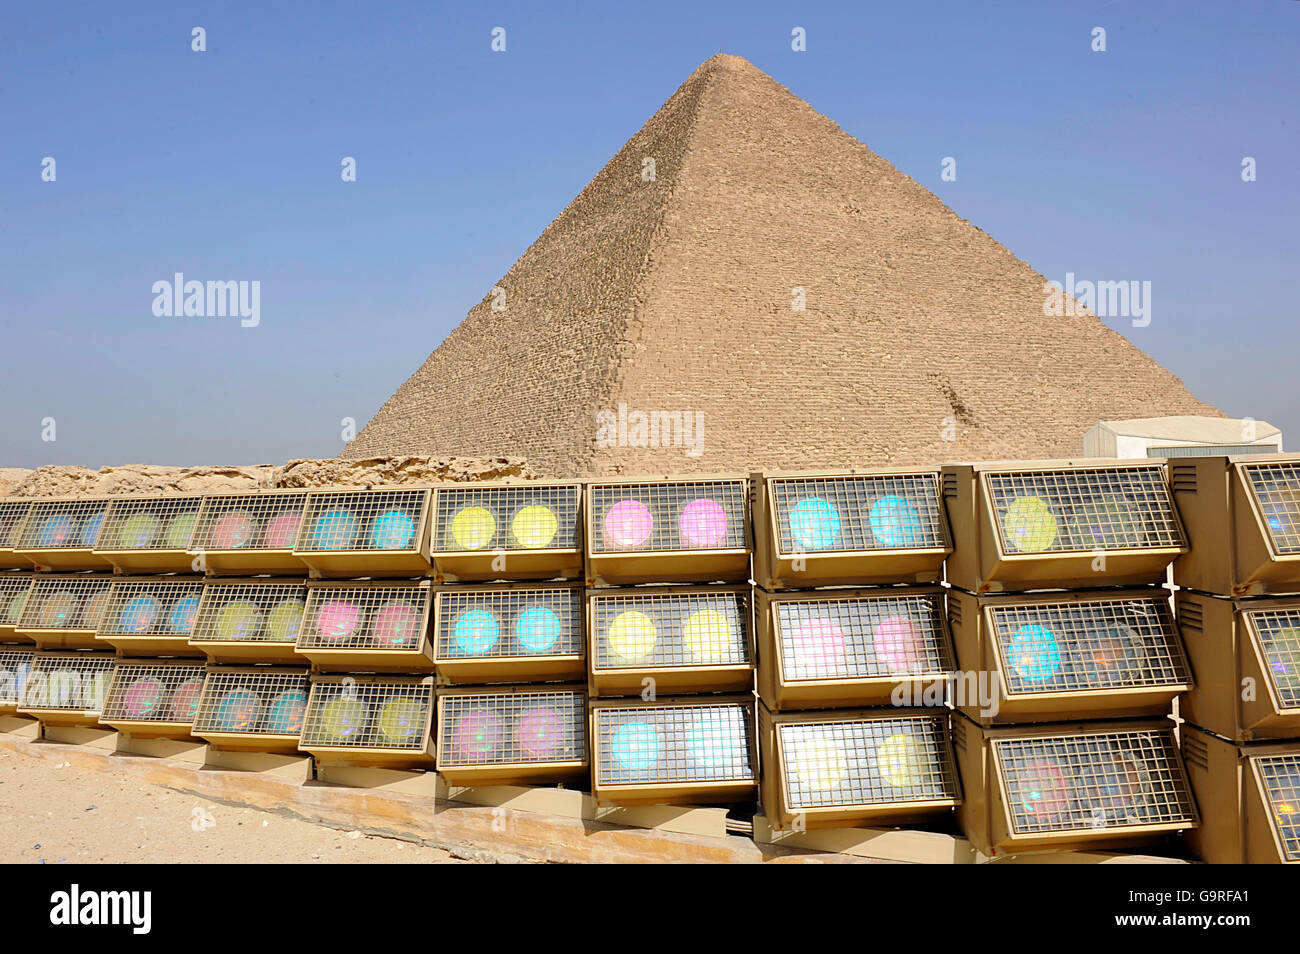 Die große Pyramide von Giza, Lampen für Licht-Show, Pyramiden von Giza, Gizeh, Ägypten / Pyramide des Cheops Stockfoto